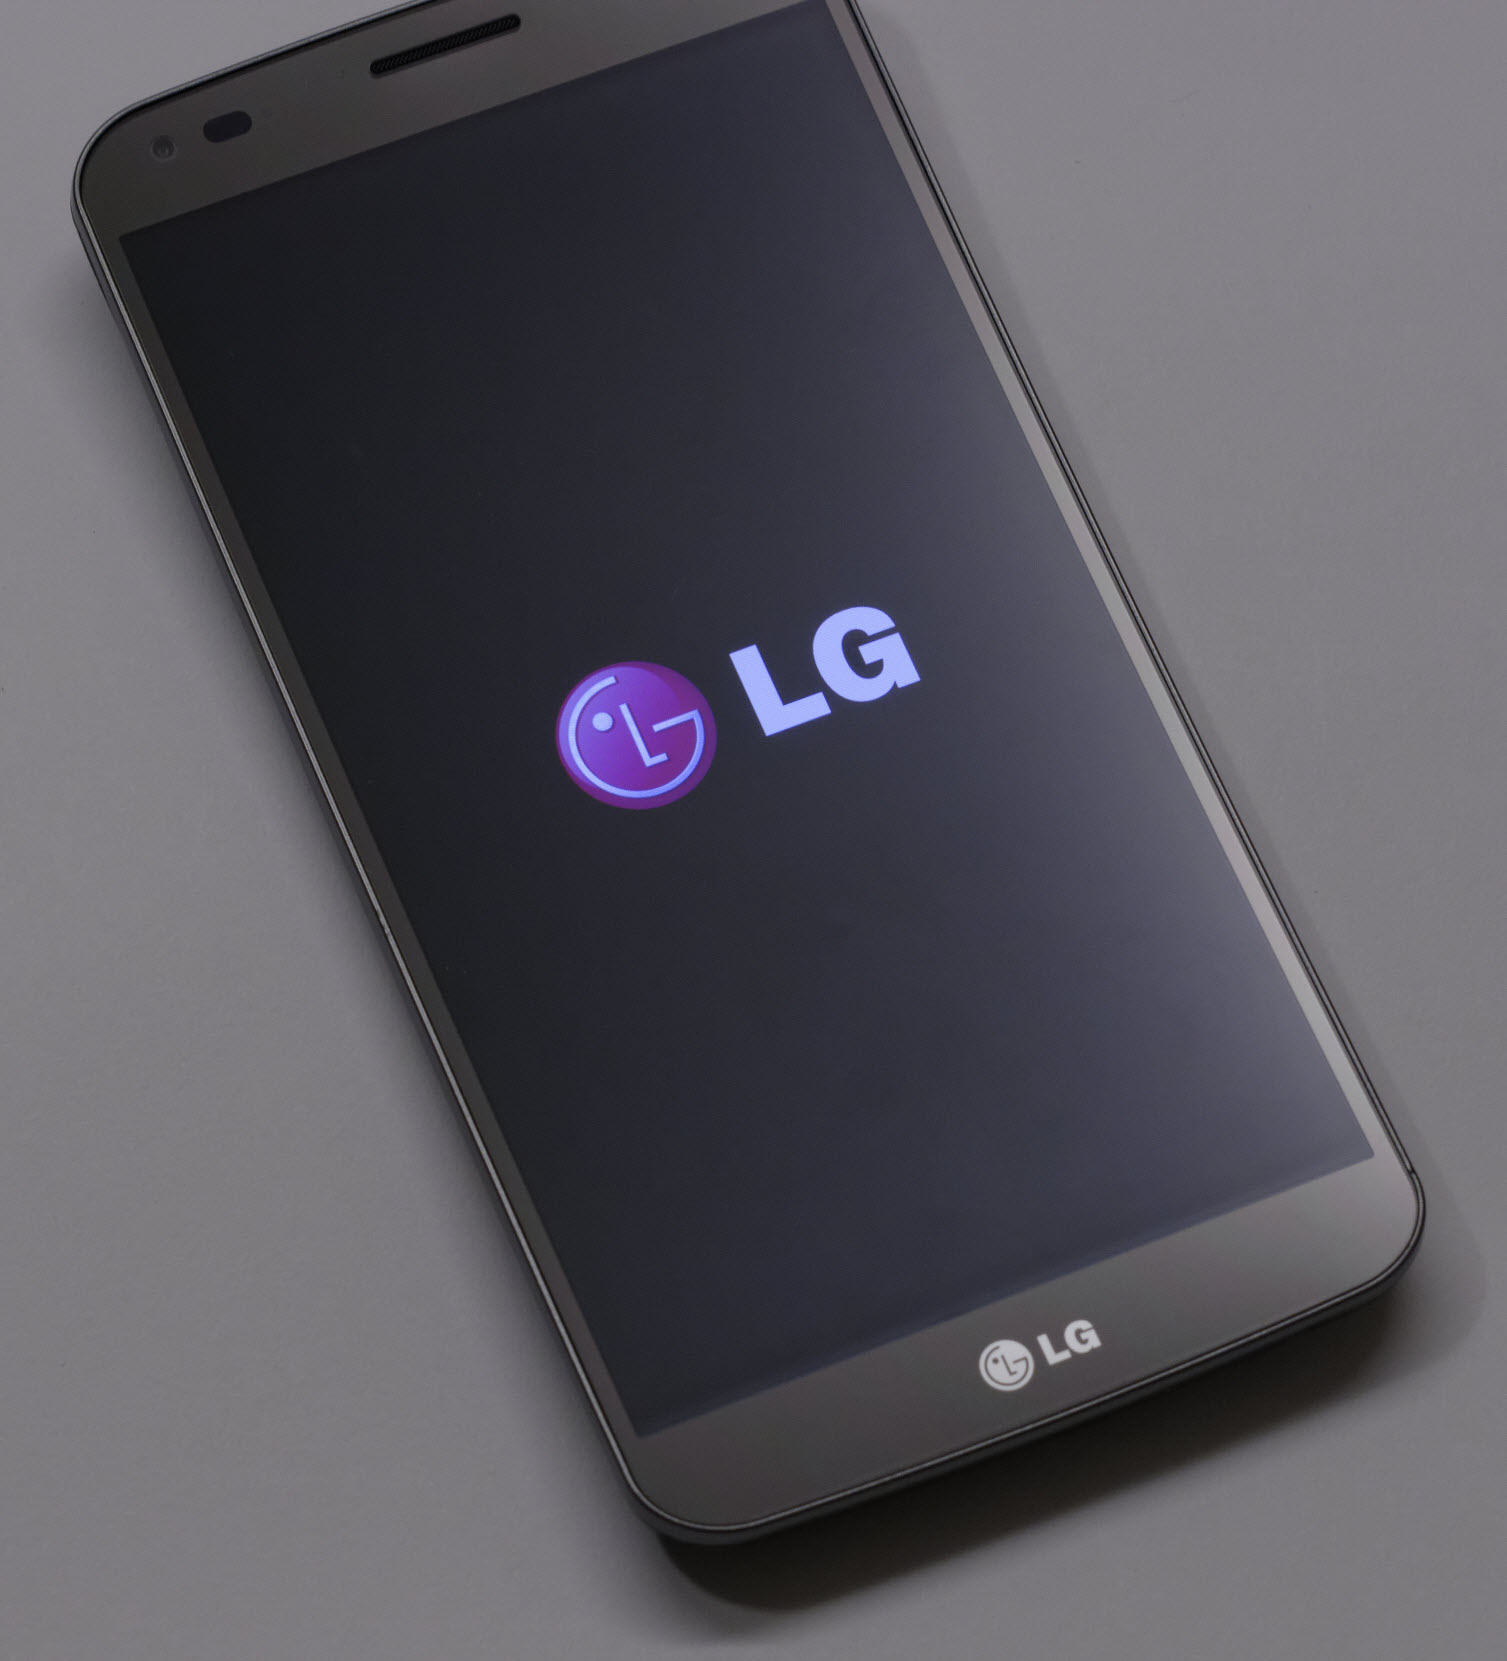 LG G Flex, une première prise en main